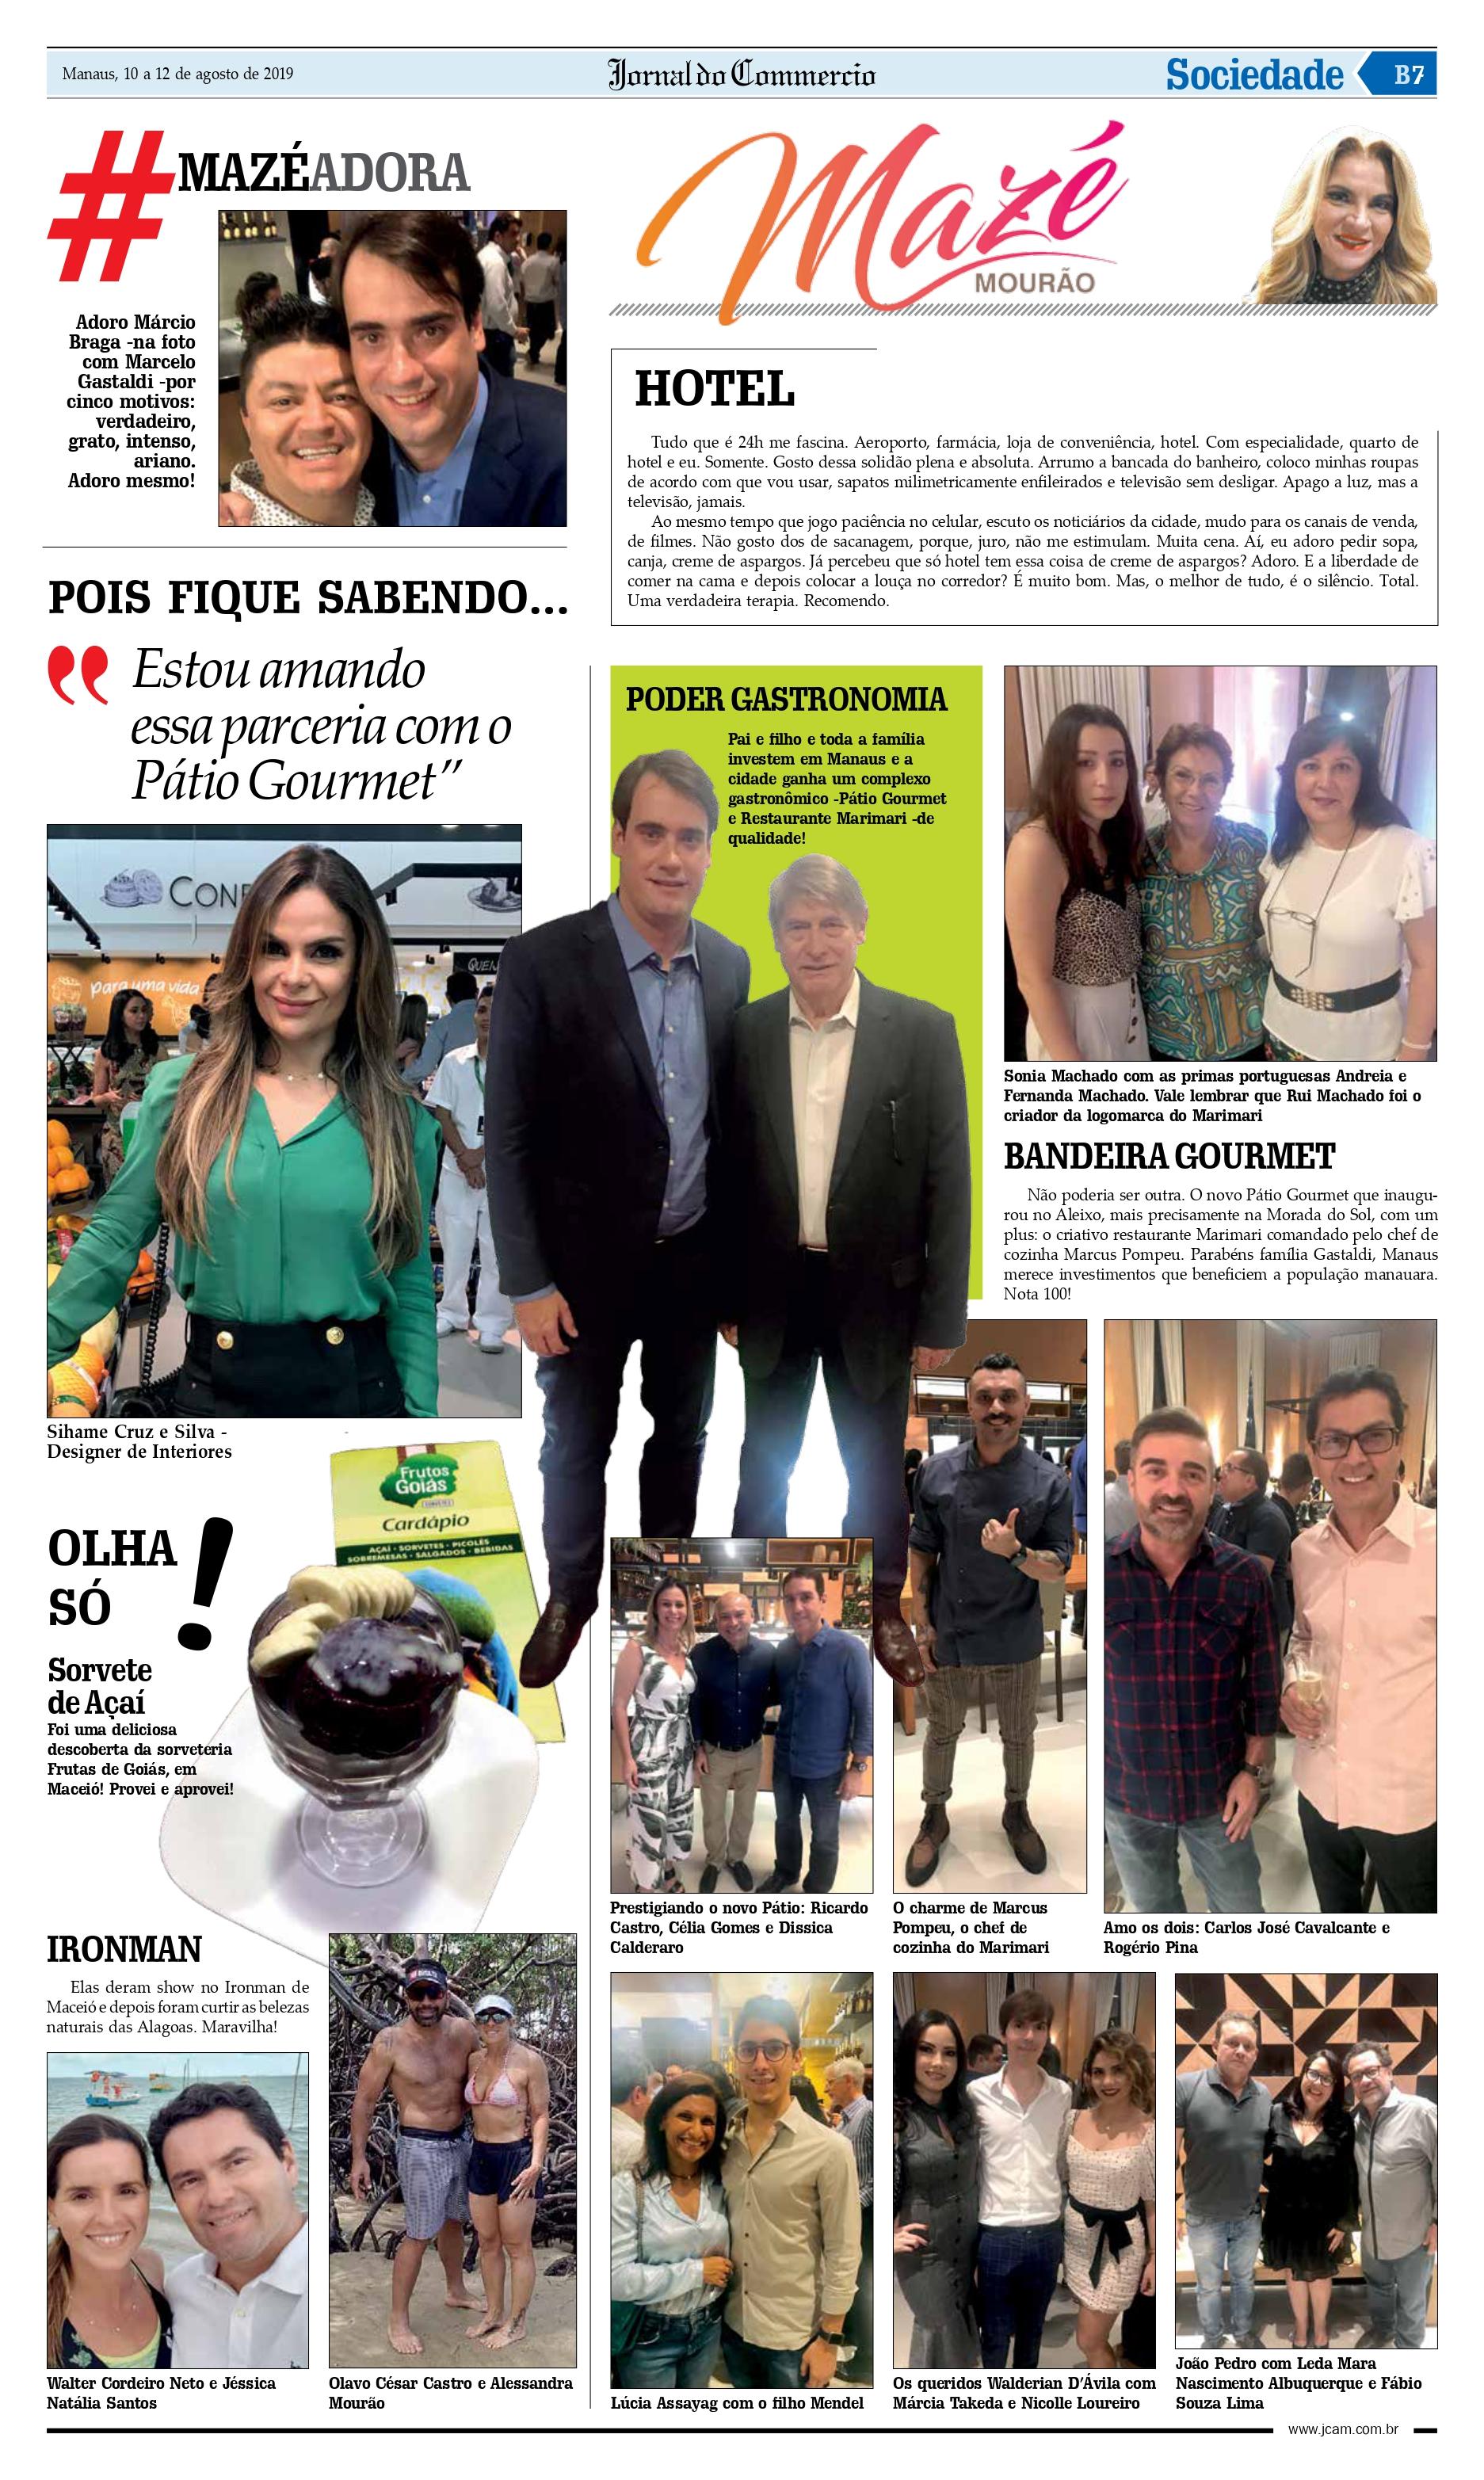 Coluna Social da Mazé Mourão para o Jornal do Commercio